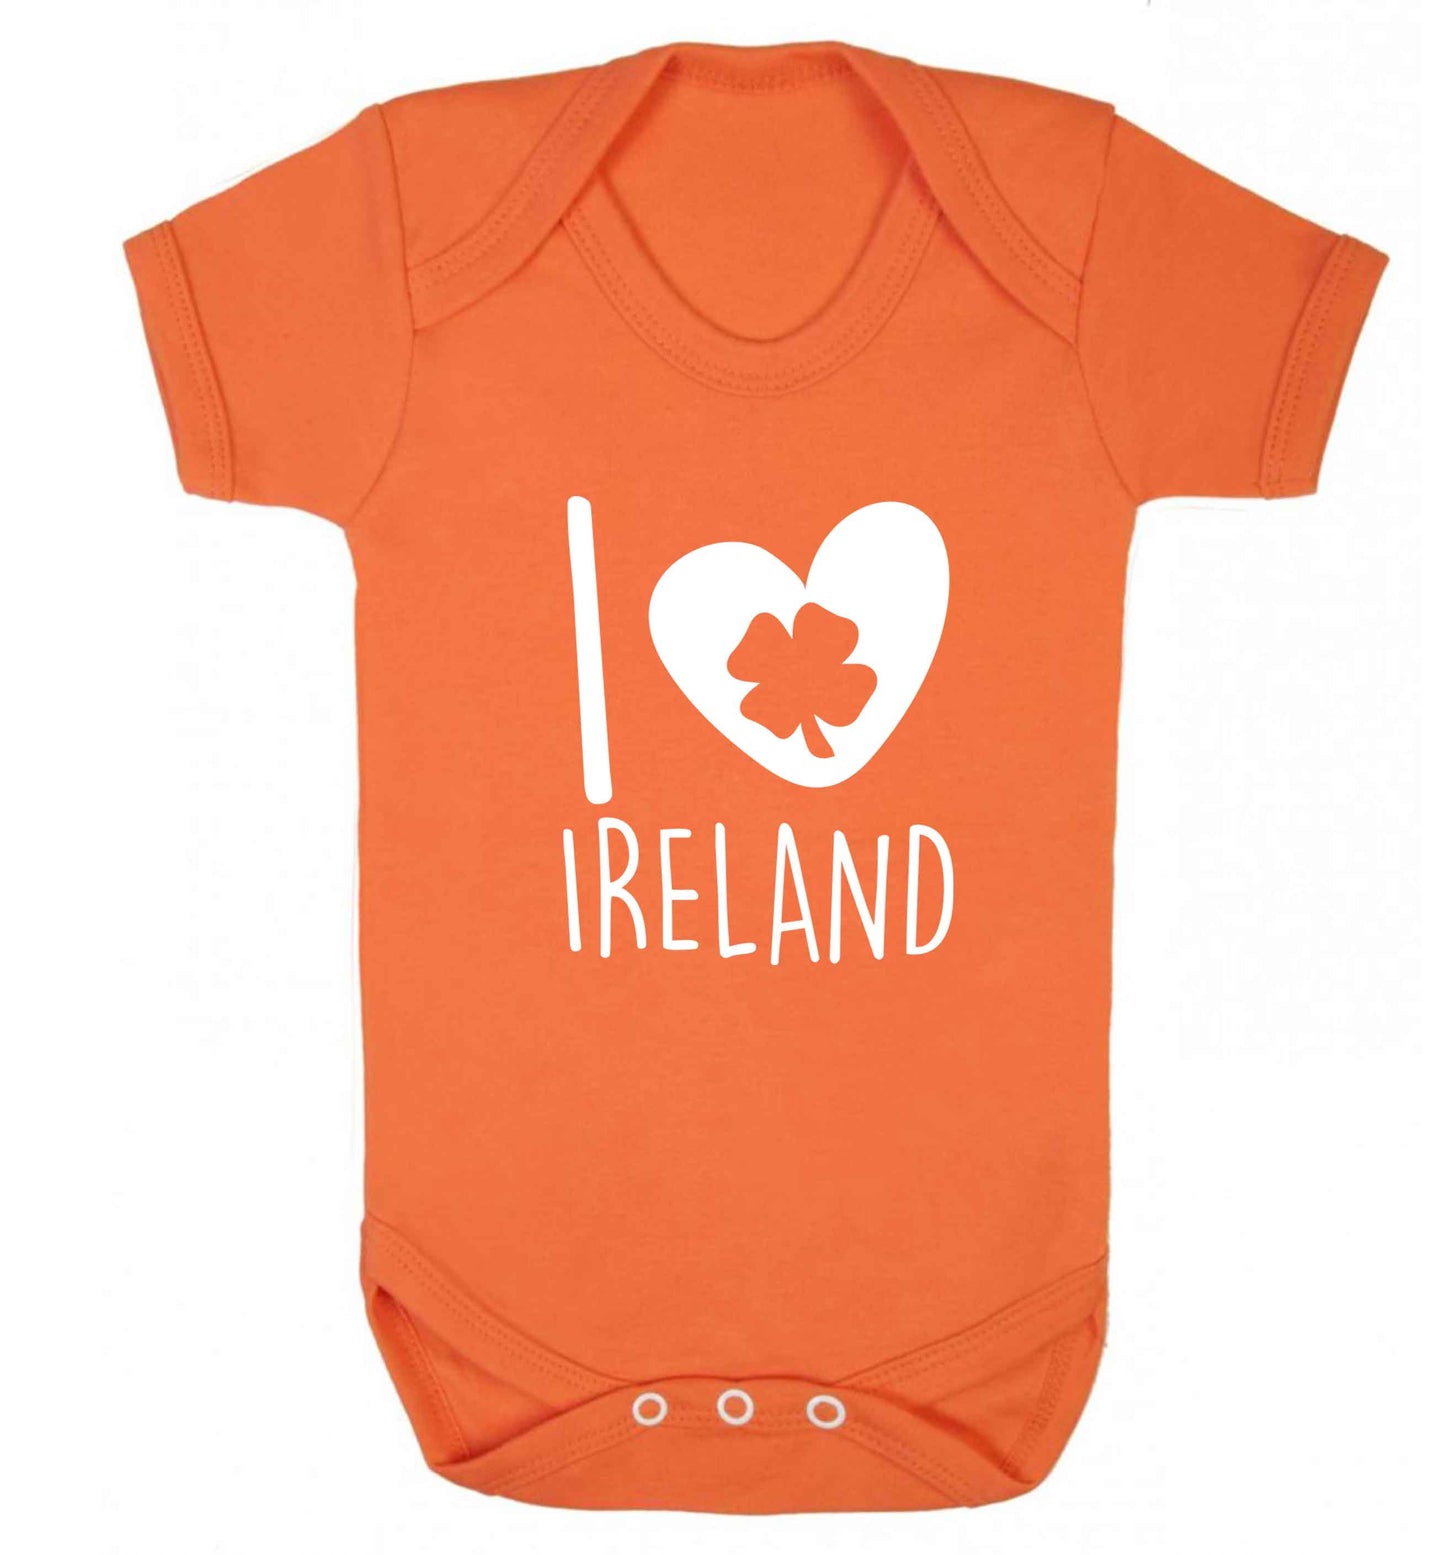 I love Ireland baby vest orange 18-24 months